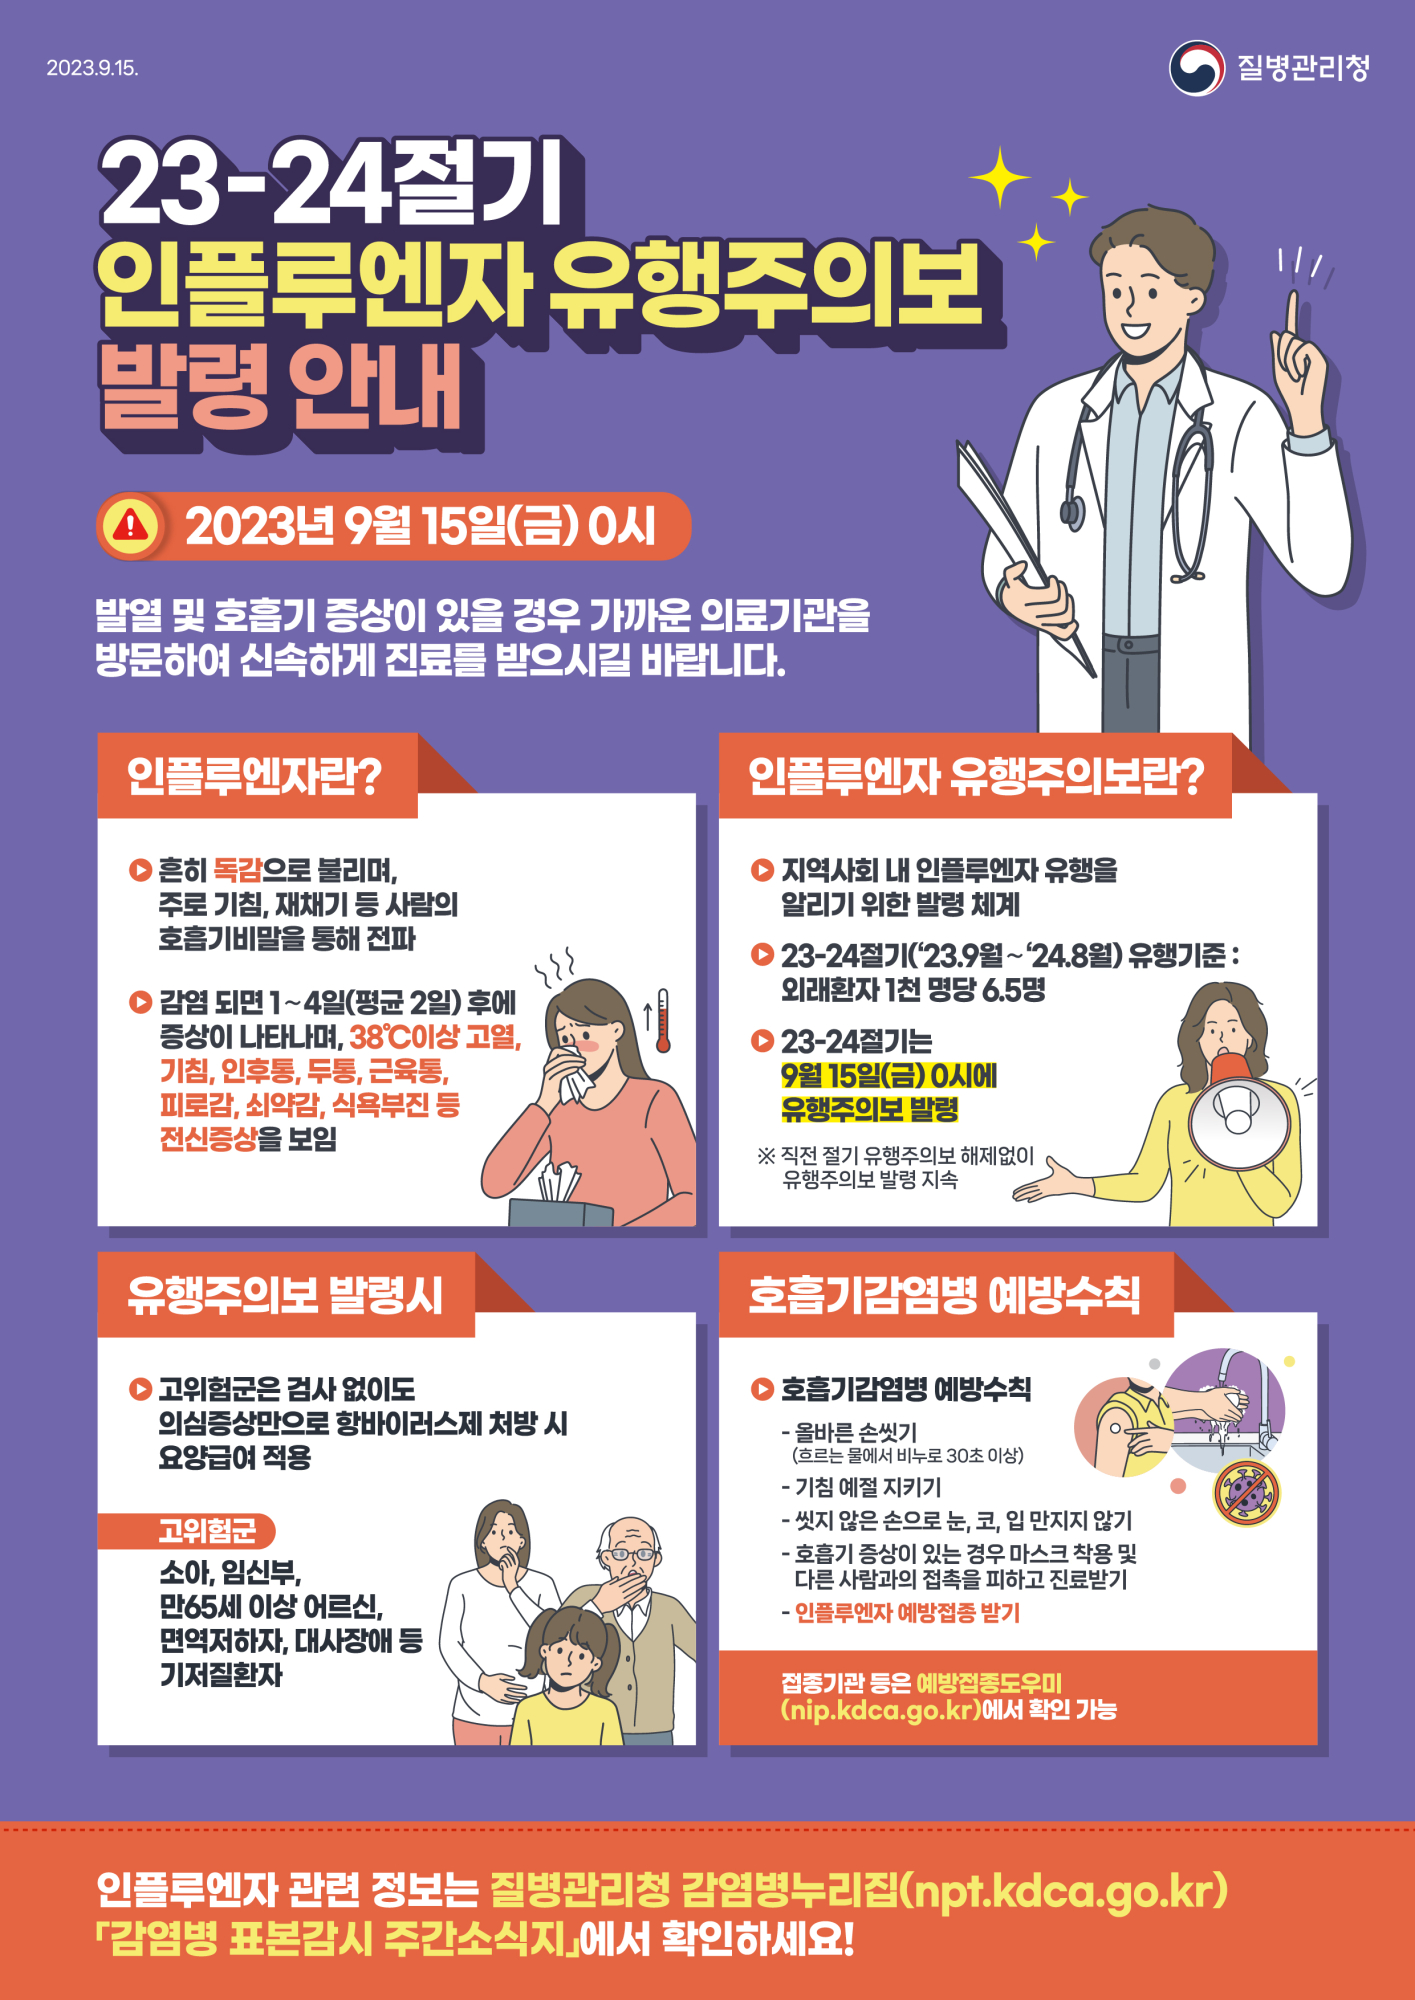 1. 인플루엔자 유행주의보 포스터